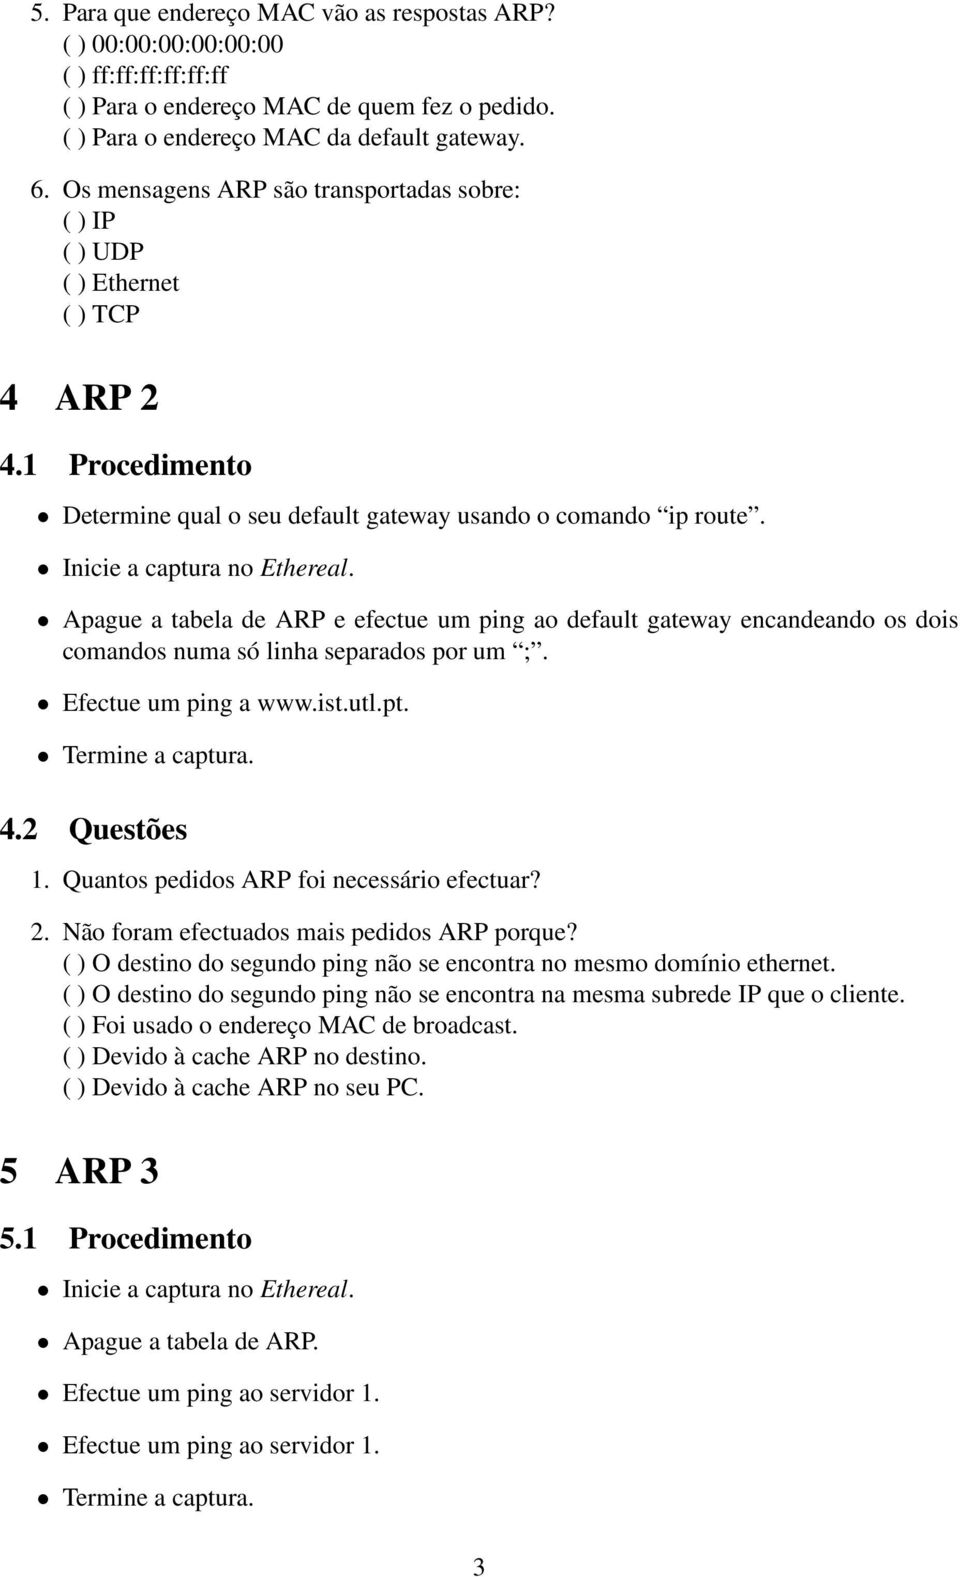 Apague a tabela de ARP e efectue um ping ao default gateway encandeando os dois comandos numa só linha separados por um ;. Efectue um ping a www.ist.utl.pt. 4.2 Questões 1.